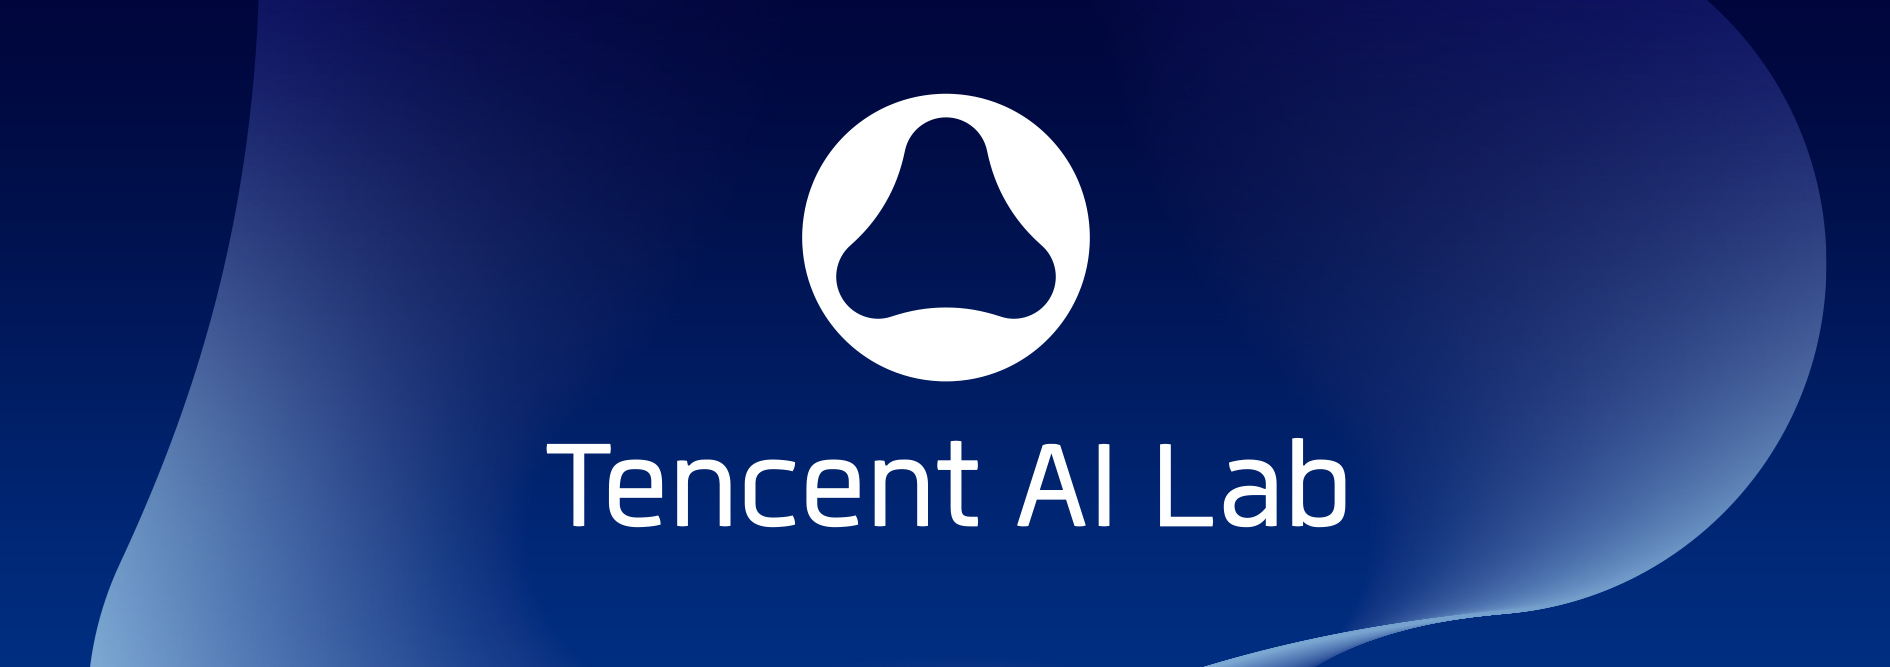 Tencent AI Lab - 品牌形象設計